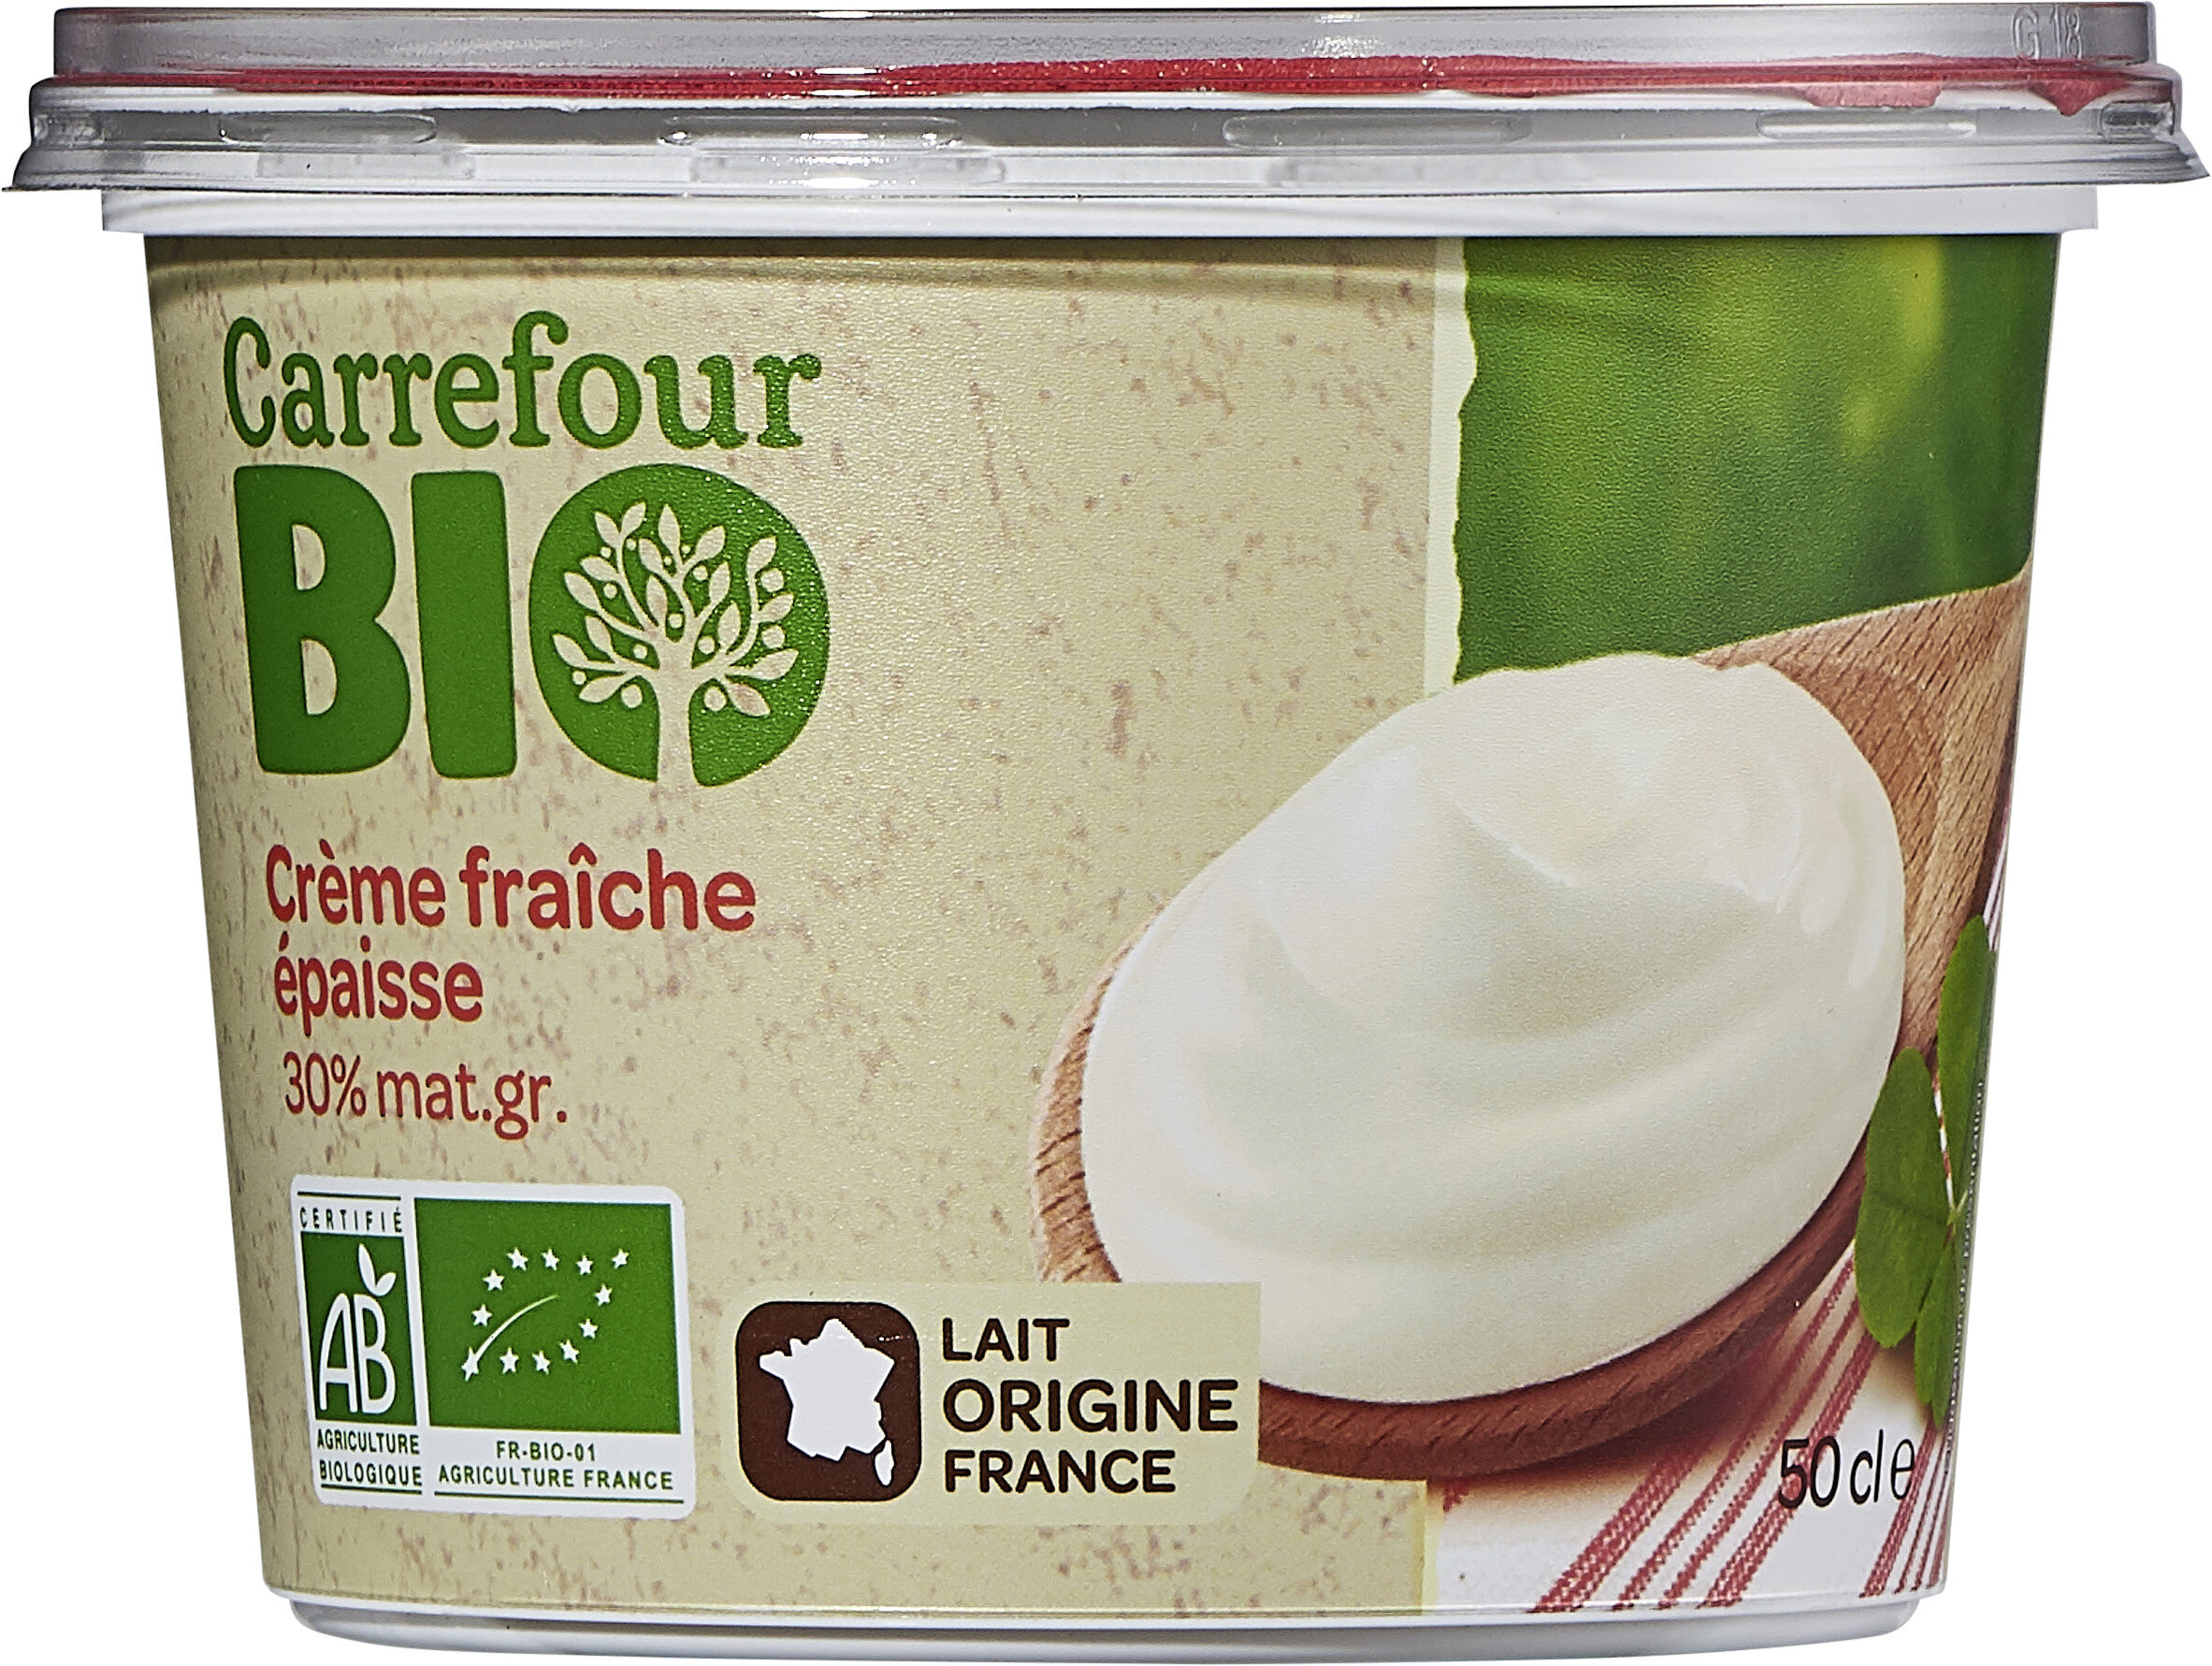 Crème fraîche épaisse - Producto - fr